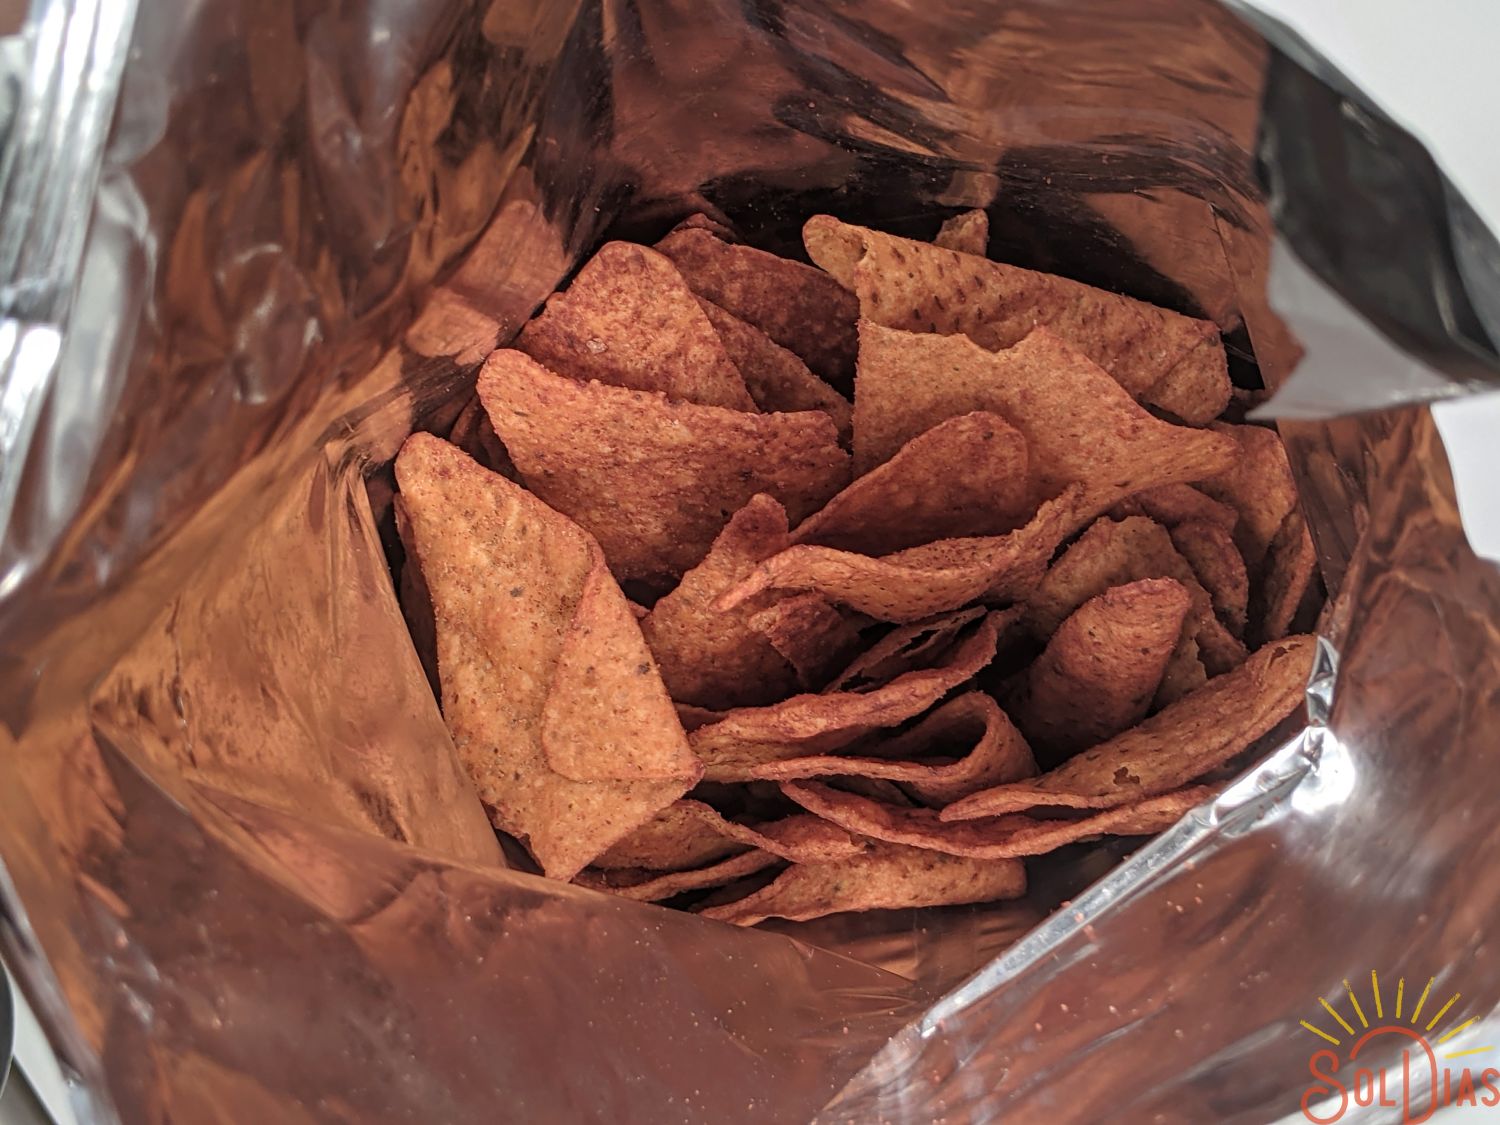 Doritos Incognita 61g | Spicy Mexican Chips | Sabritas Mexicanas - Sol Dias